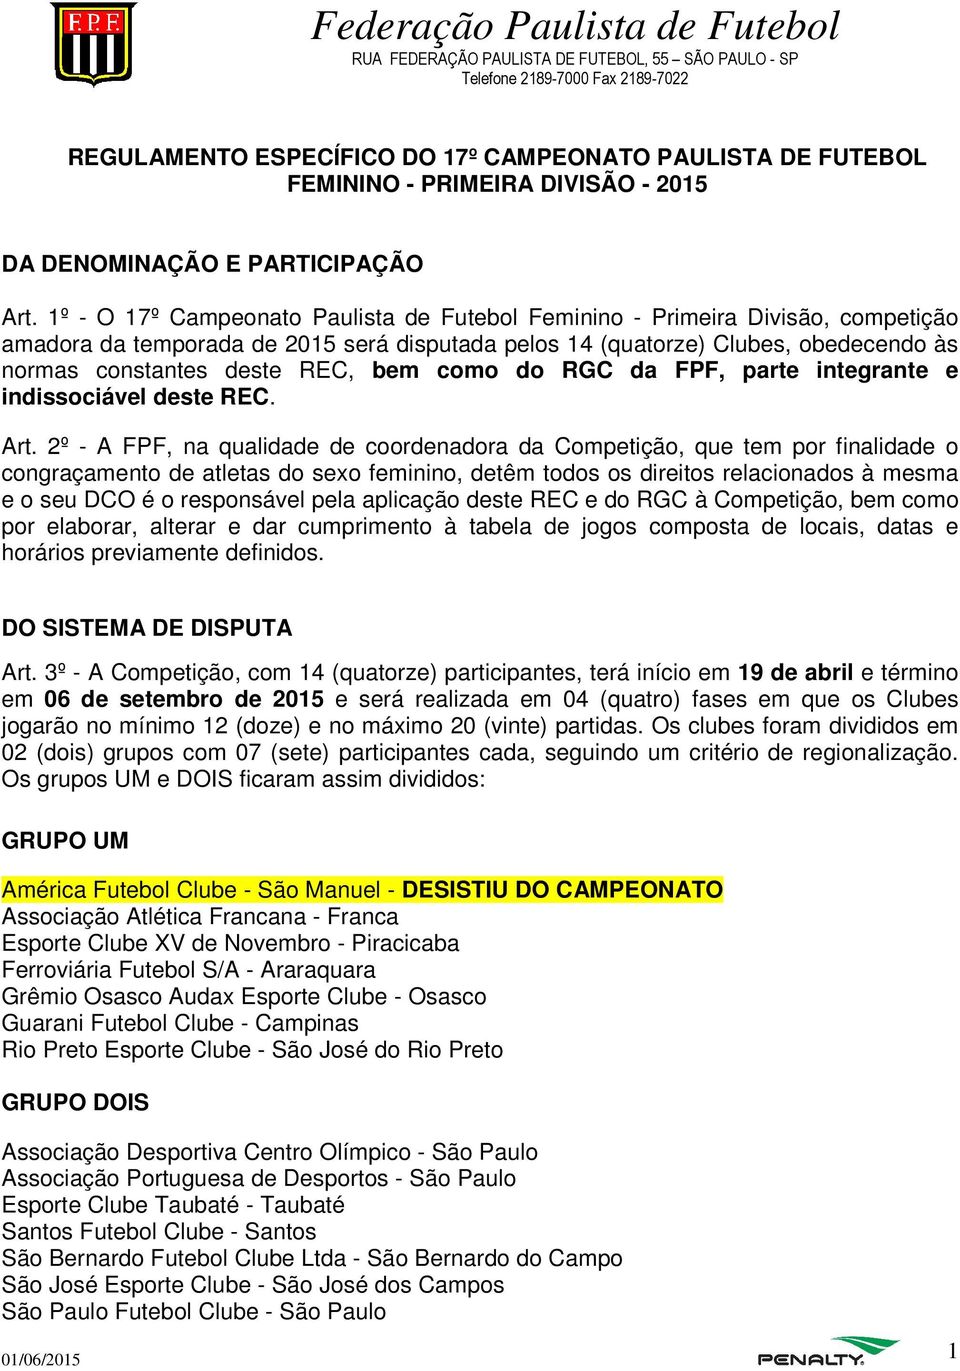 1º - O 17º Campeonato Paulista de Futebol Feminino - Primeira Divisão, competição amadora da temporada de 2015 será disputada pelos 14 (quatorze) Clubes, obedecendo às normas constantes deste REC,